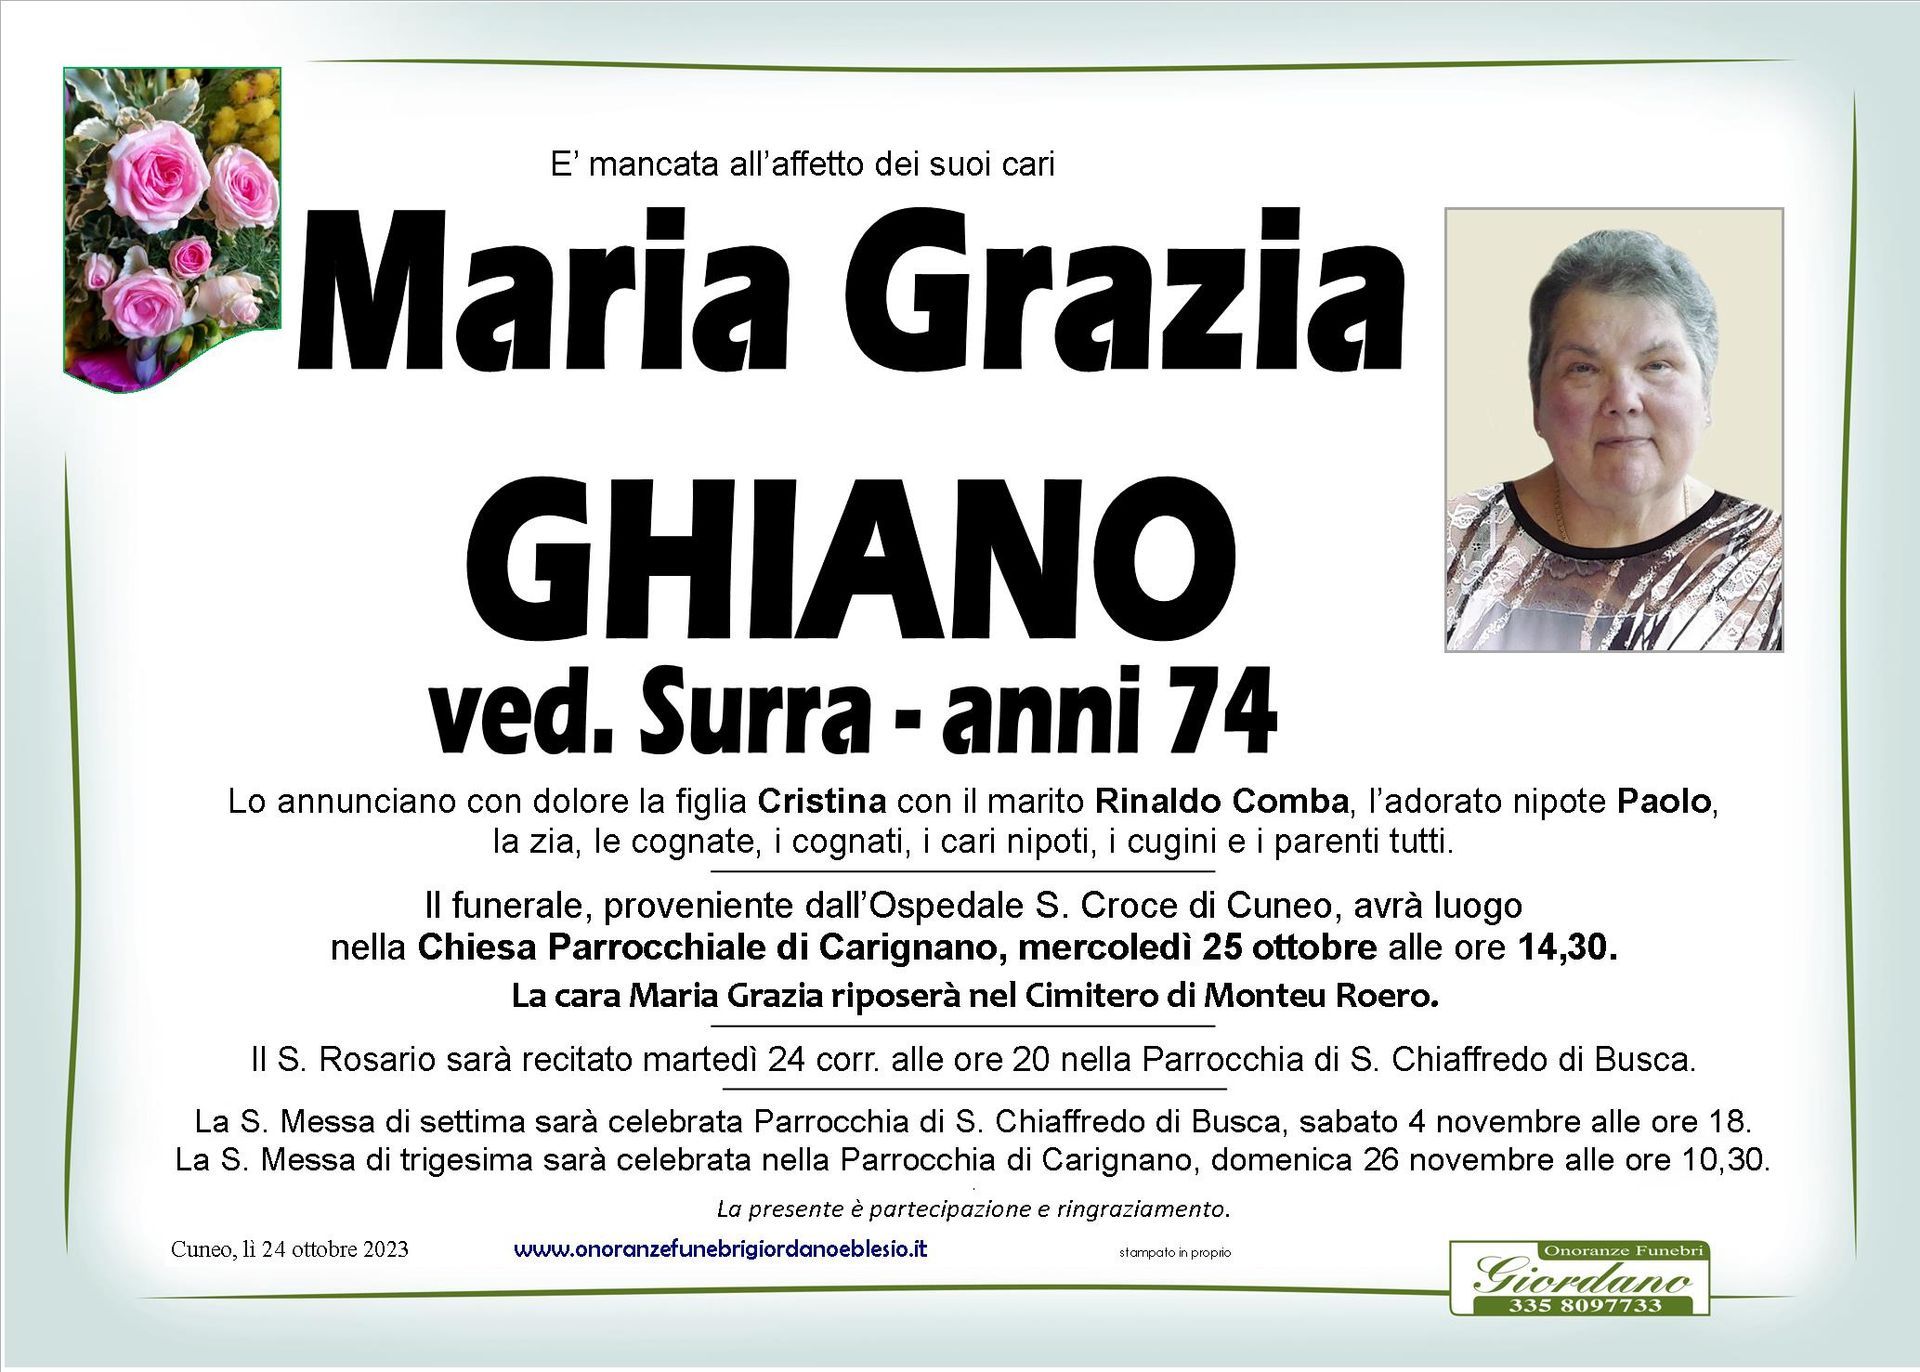 necrologio GHIANO Maria Grazia ved. Surra